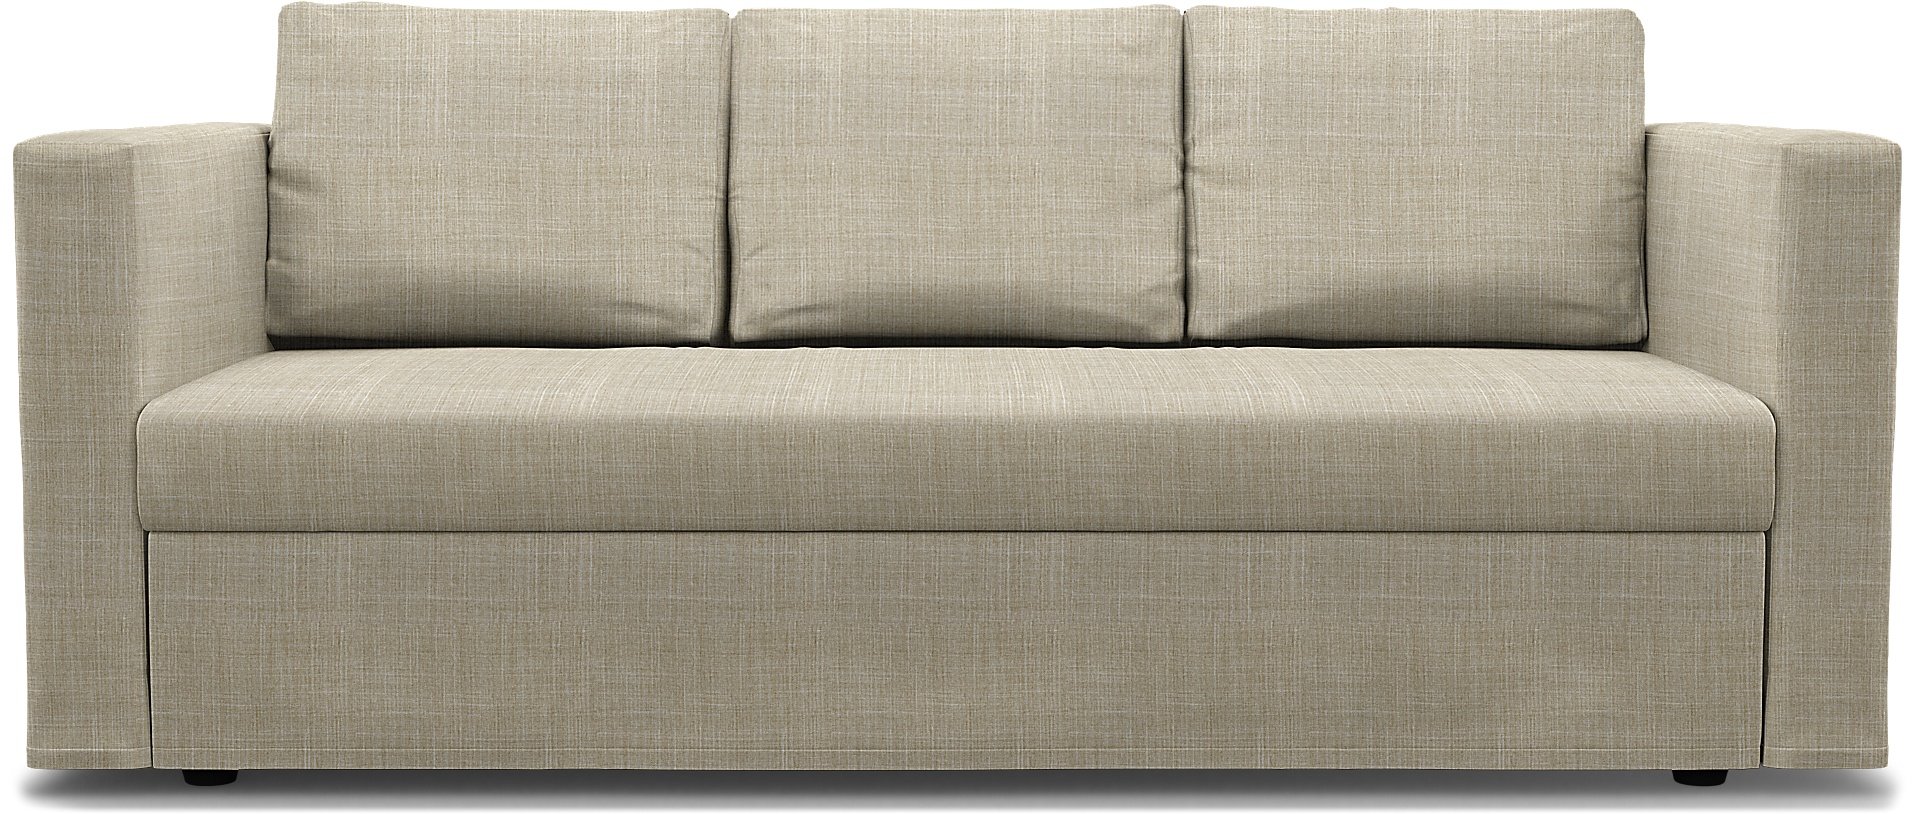 IKEA - Friheten 3 Seater Sofa Bed Cover, Sand Beige, Boucle & Texture - Bemz